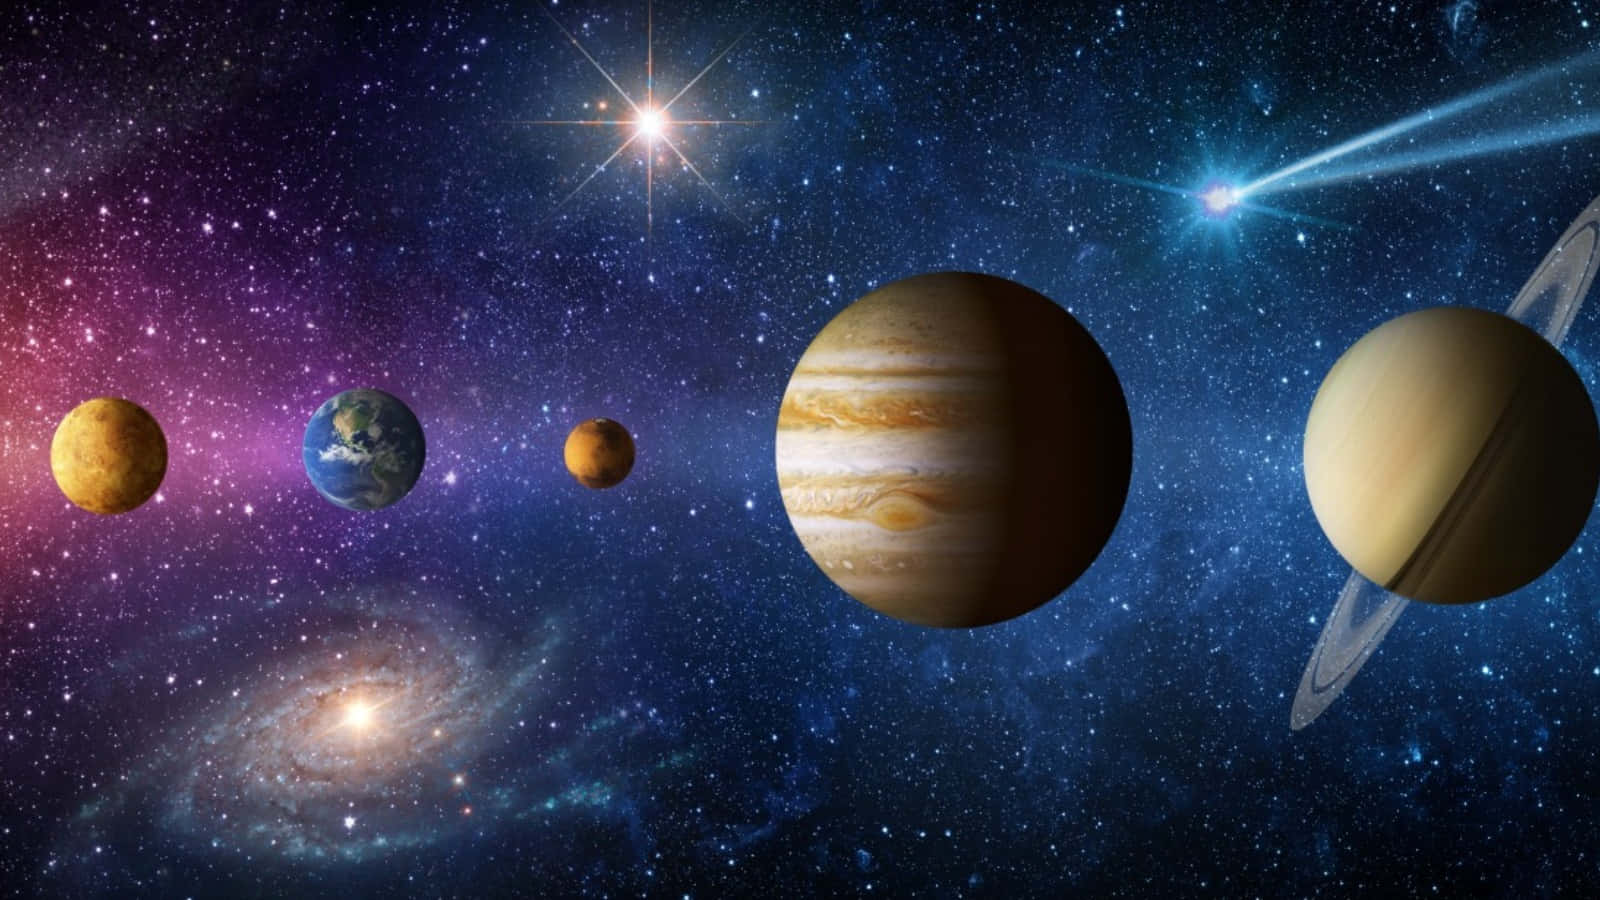 Bildder Fünf Planeten Im Sonnensystem.